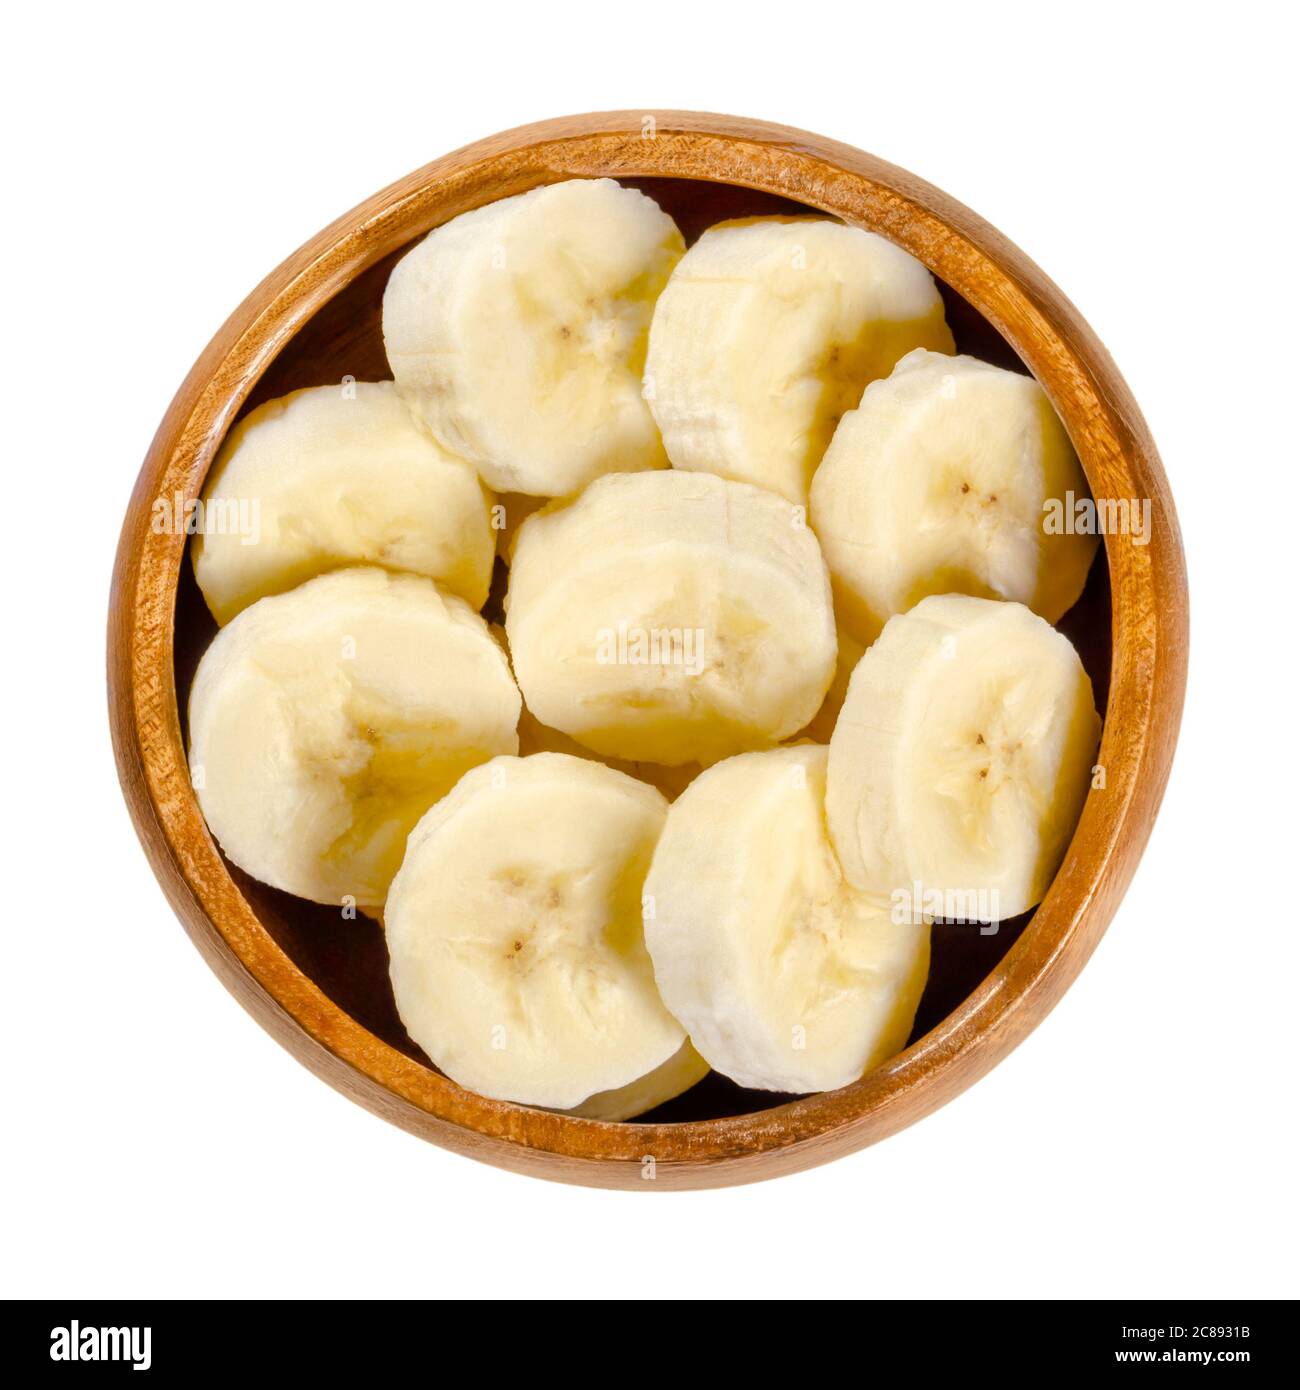 Frische Bananenscheiben in Holzschüssel. Reife und geschälte Banane in runde Stücke geschnitten. Essbare und verzehrfertige Dessertfrucht mit leicht gelber Farbe. Stockfoto